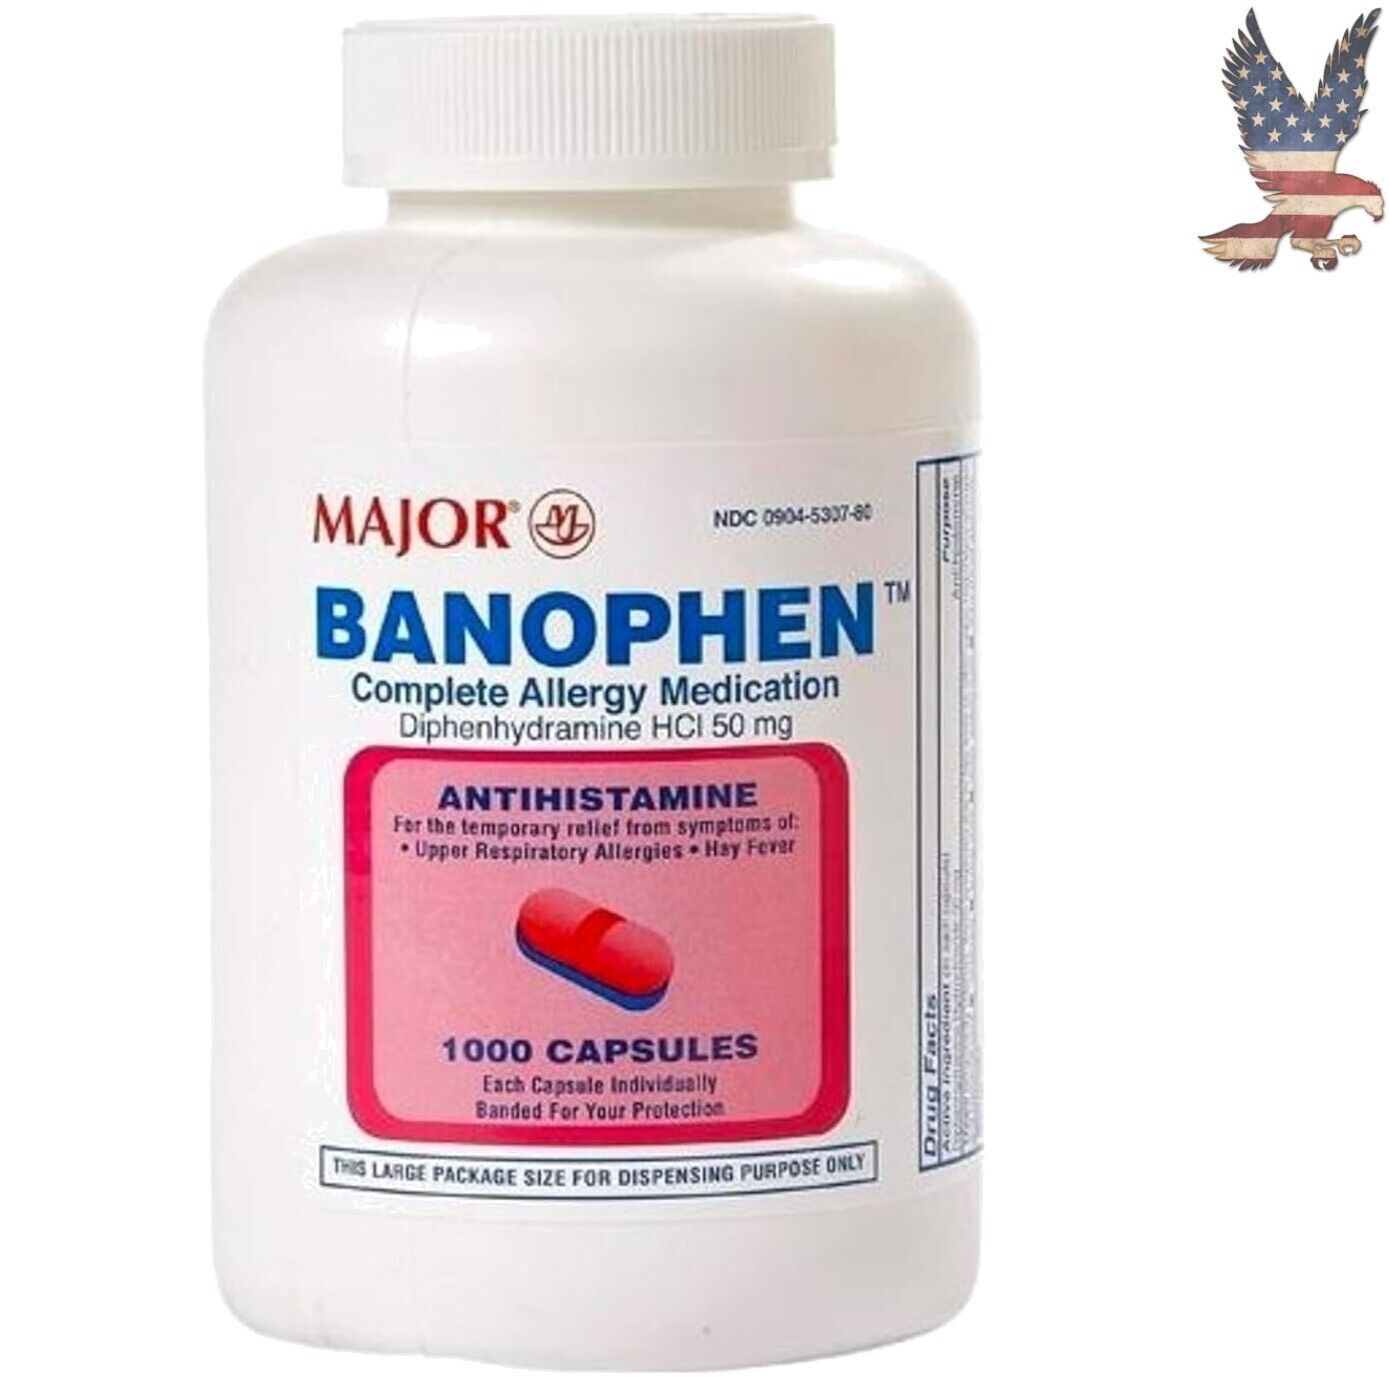 1000 Banophen Antihistamine Capsules - Compare to Benadryl - 50mg - Pink Pack